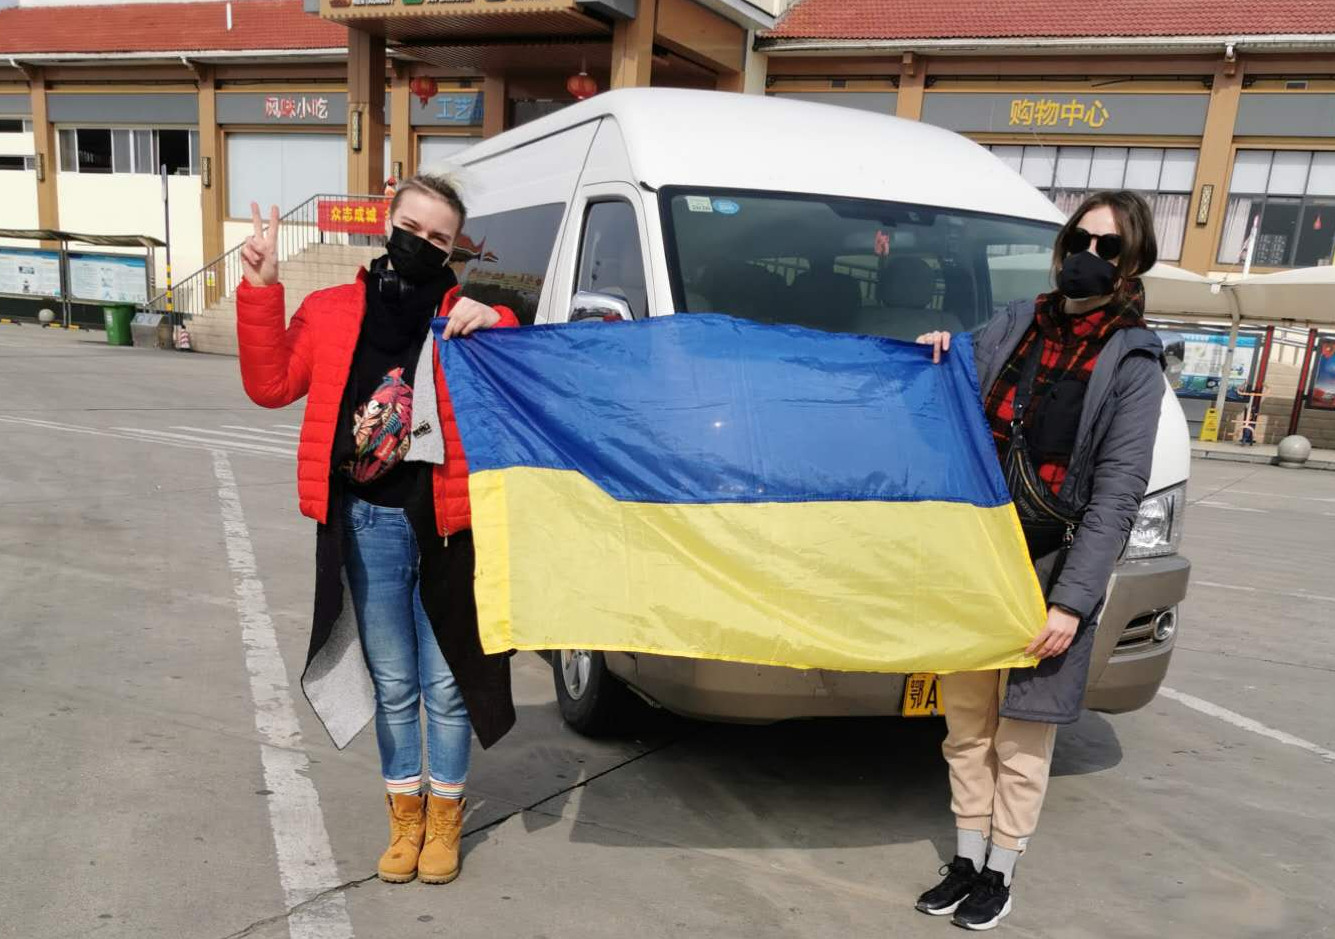 48 громадян України і 29 іноземців, яких мають евакуювати, прибули до аеропорту Уханя, – посольство. ФОТО